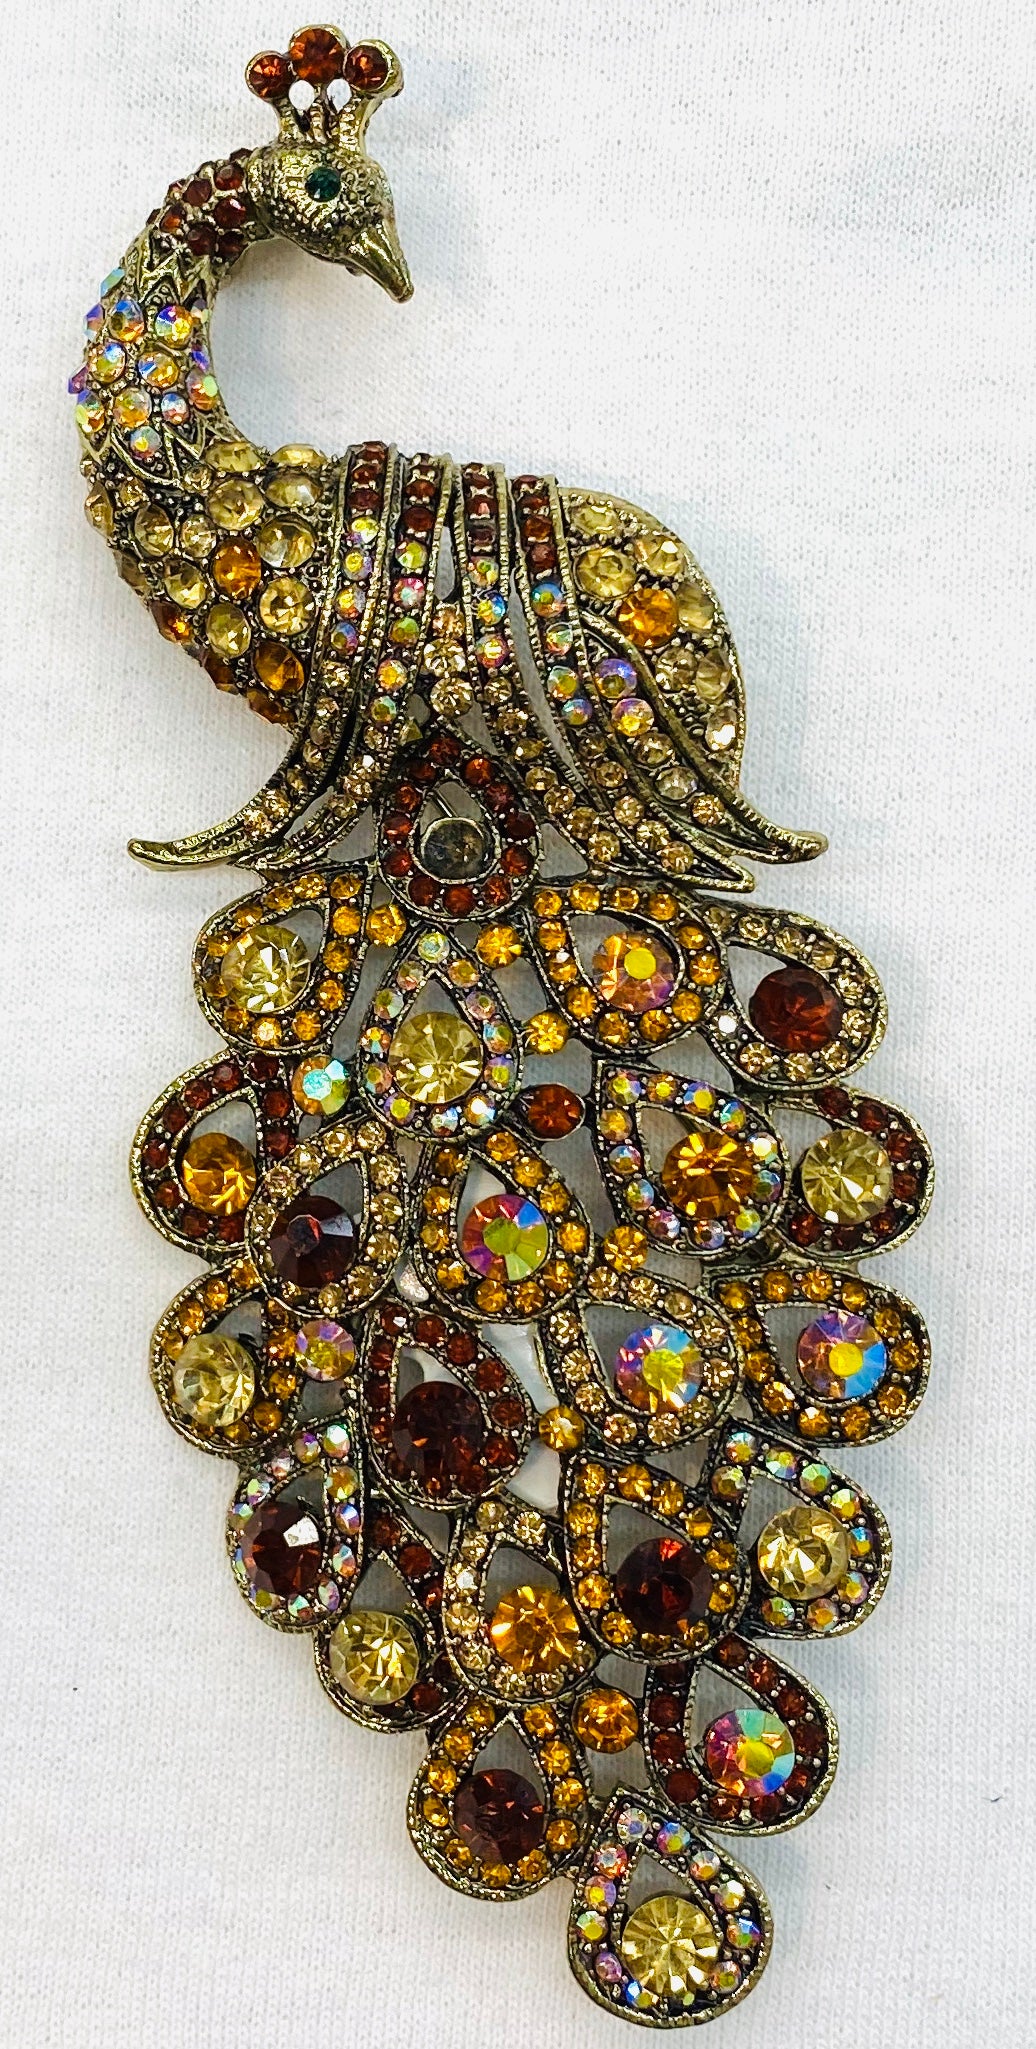 Peacock pins